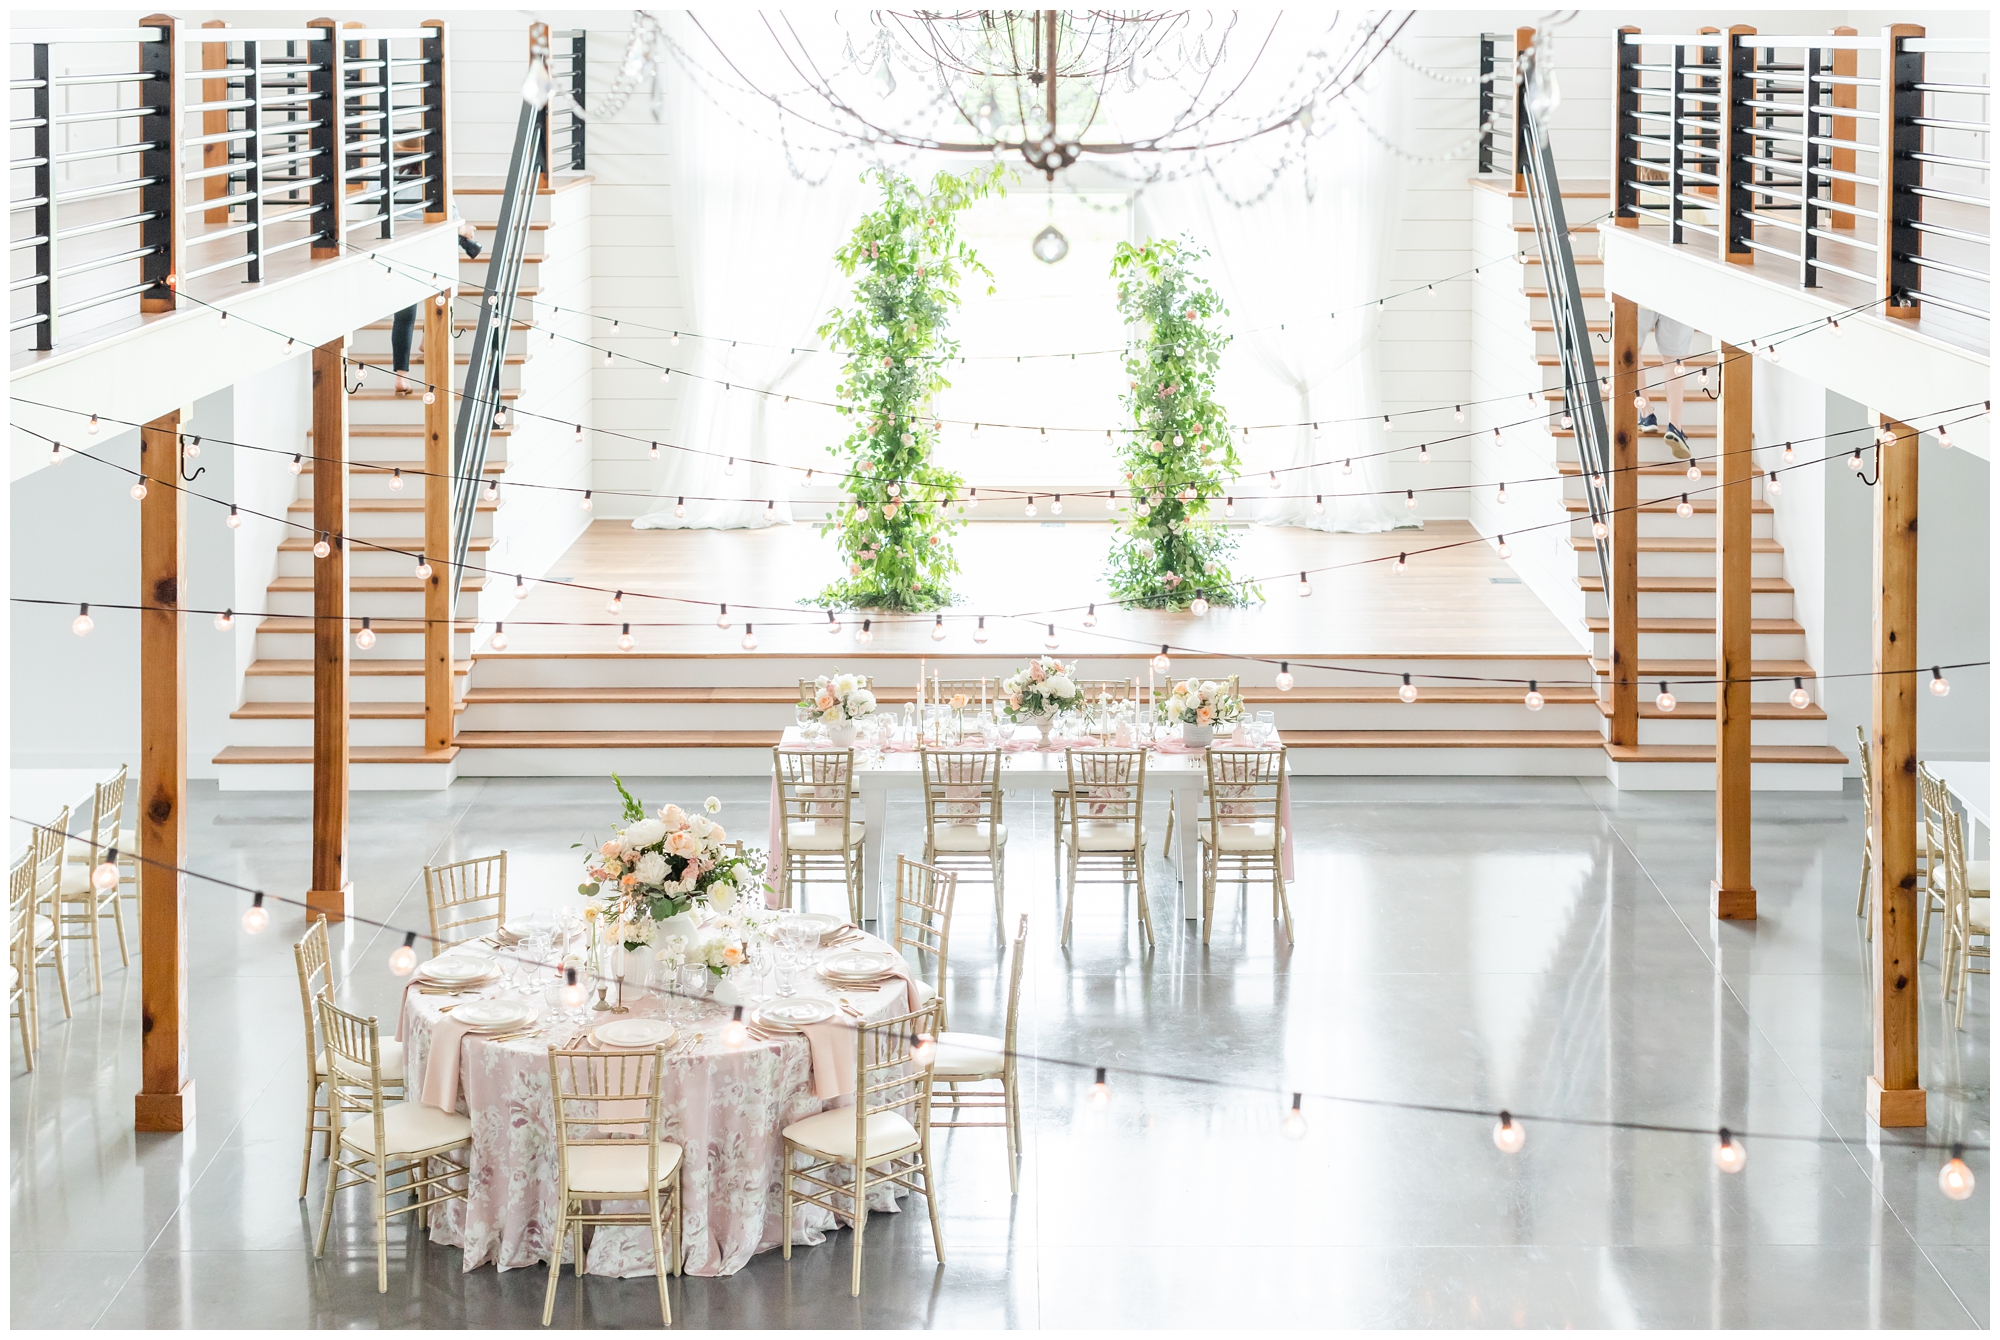 Styled wedding reception at Emerson Fields Wedding Venue